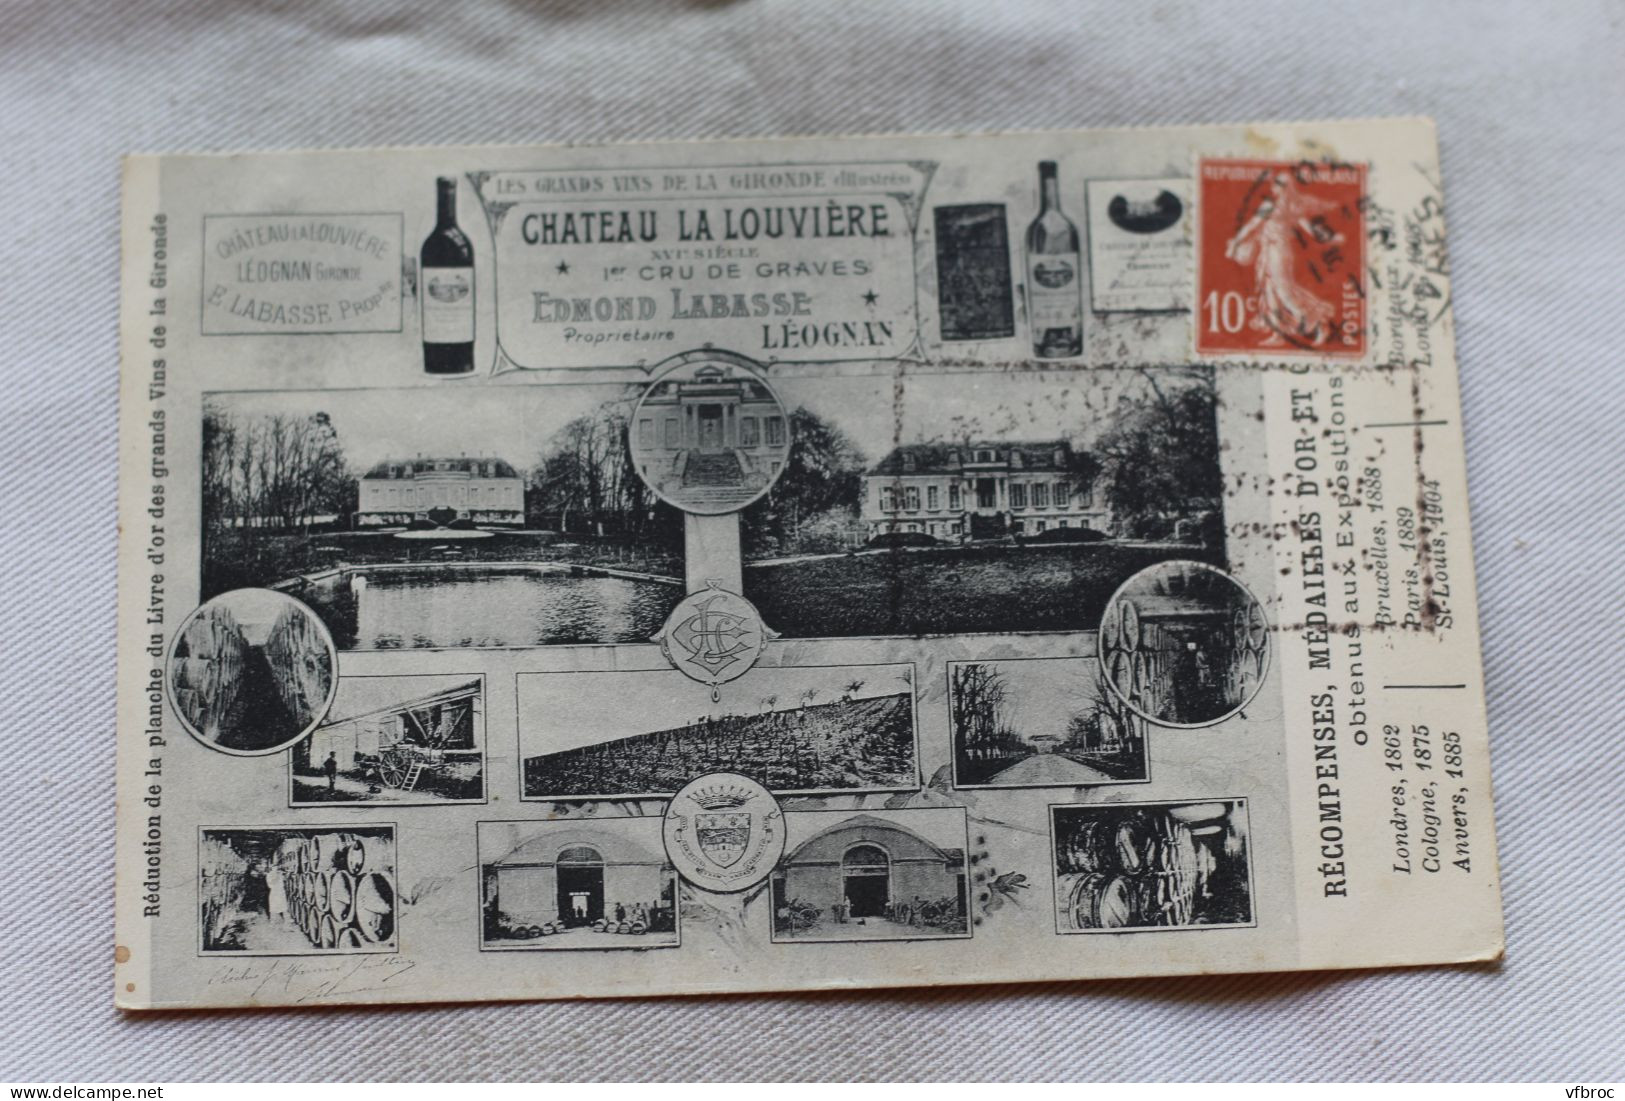 Cpa 1911, Château La Louvière, Récompenses, Médailles Obtenus Aux Expositions, Publicité, Gironde 33 - Advertising